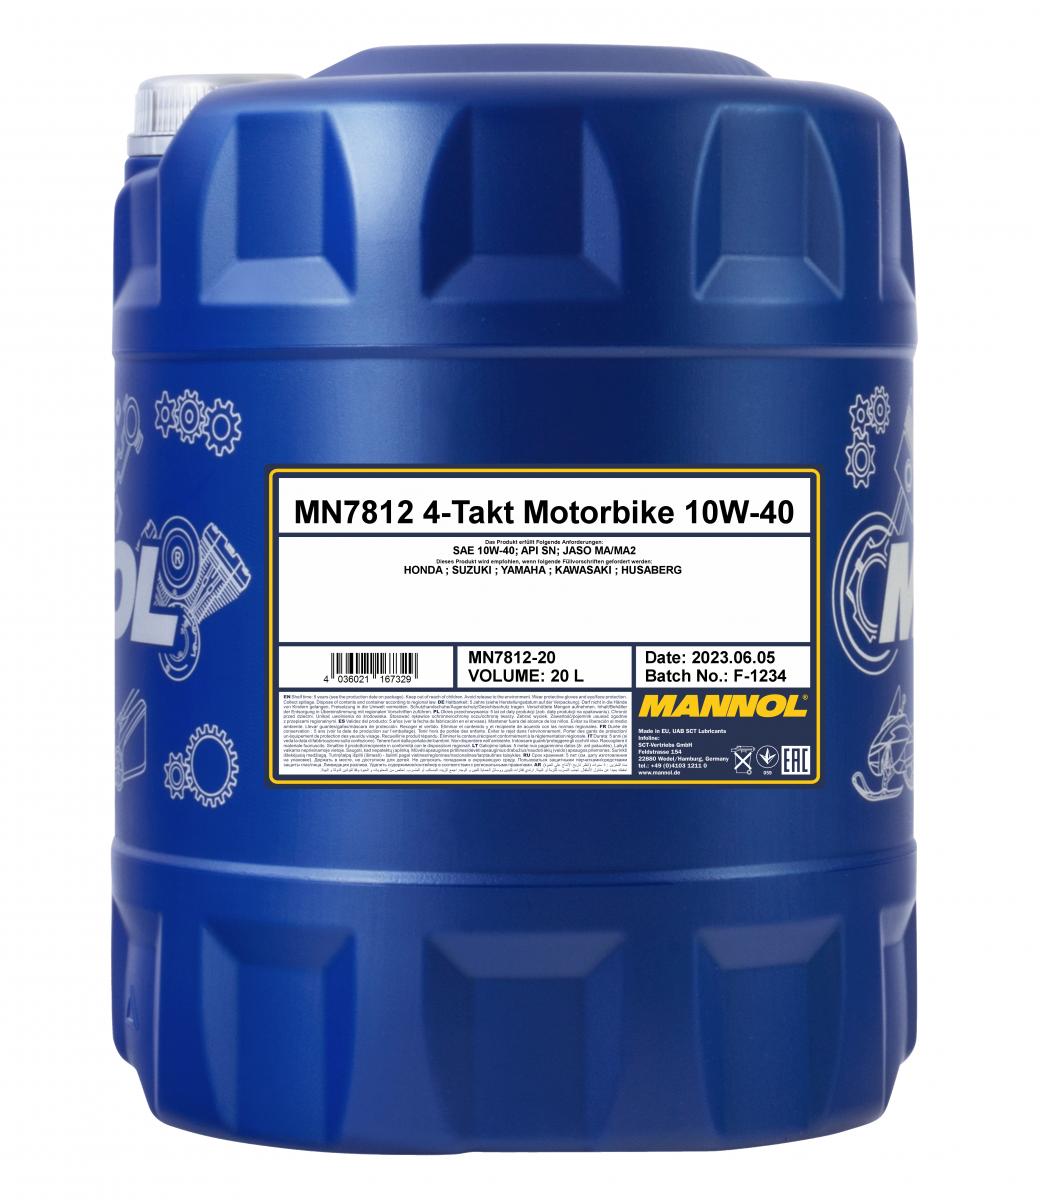 20 Liter MANNOL 4-Takt Motorbike 10W-40 7812 API SN JASO MA/MA2 Motorradöl